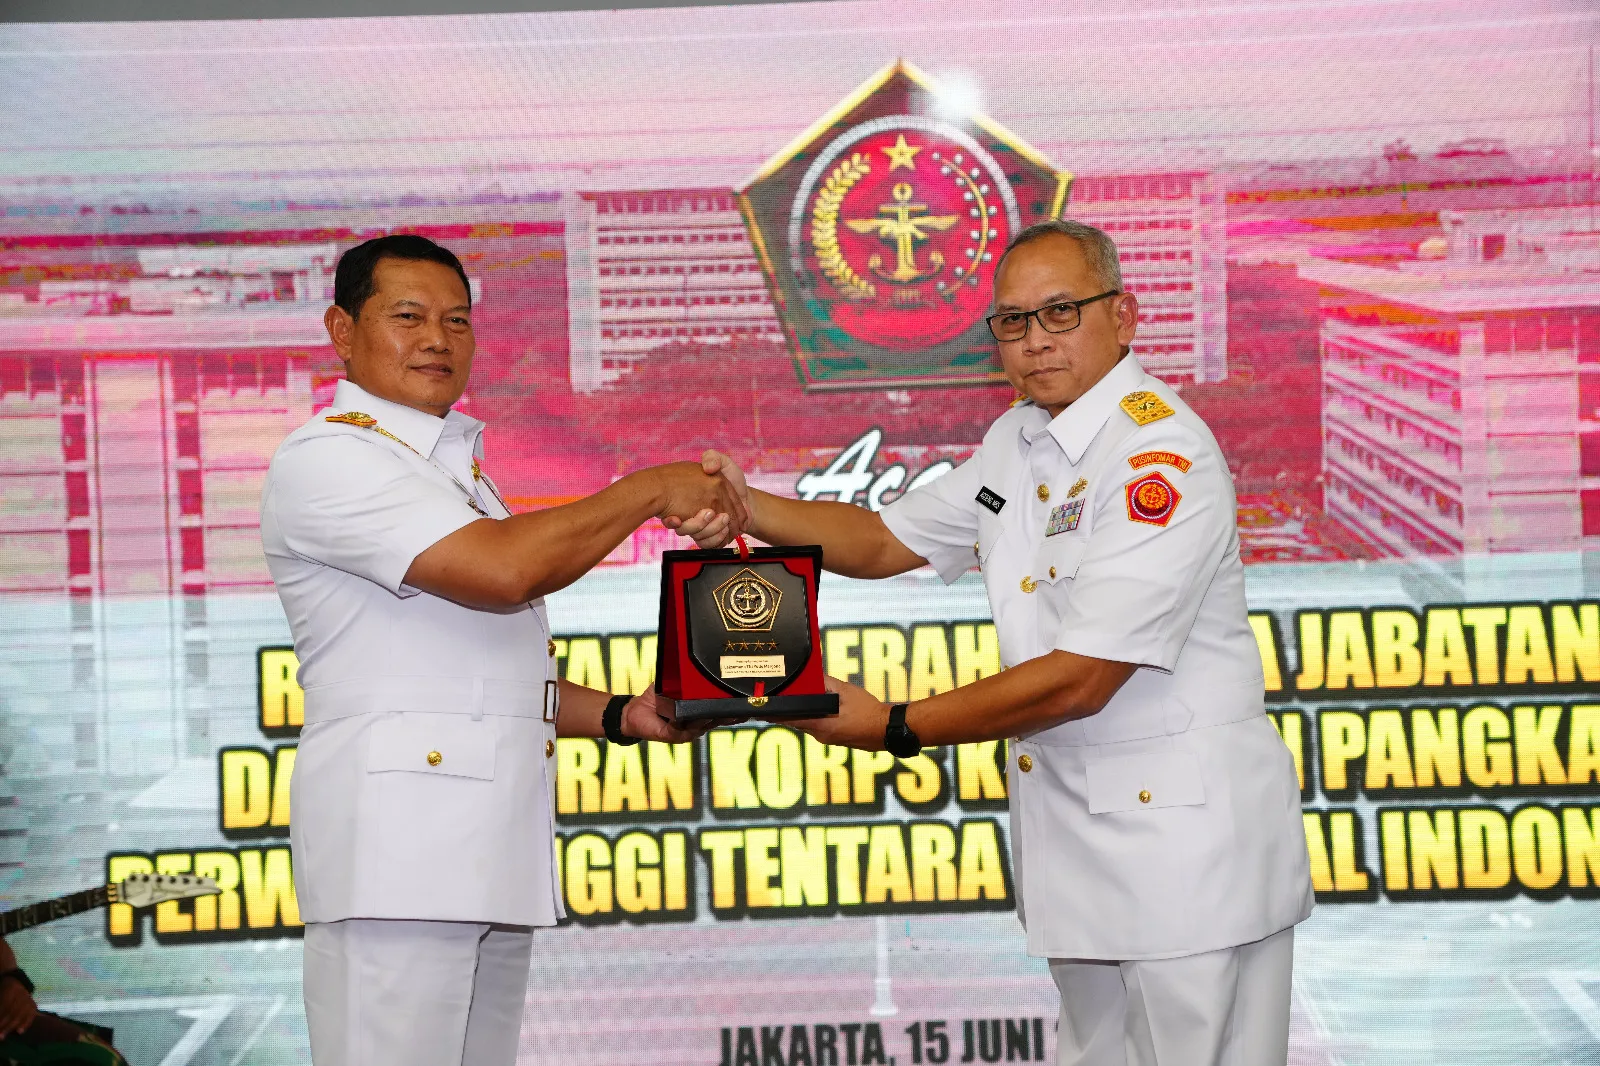 Panglima TNI: TNI Bukan Dwi Fungsi Lagi Tapi Sekarang Multi Fungsi